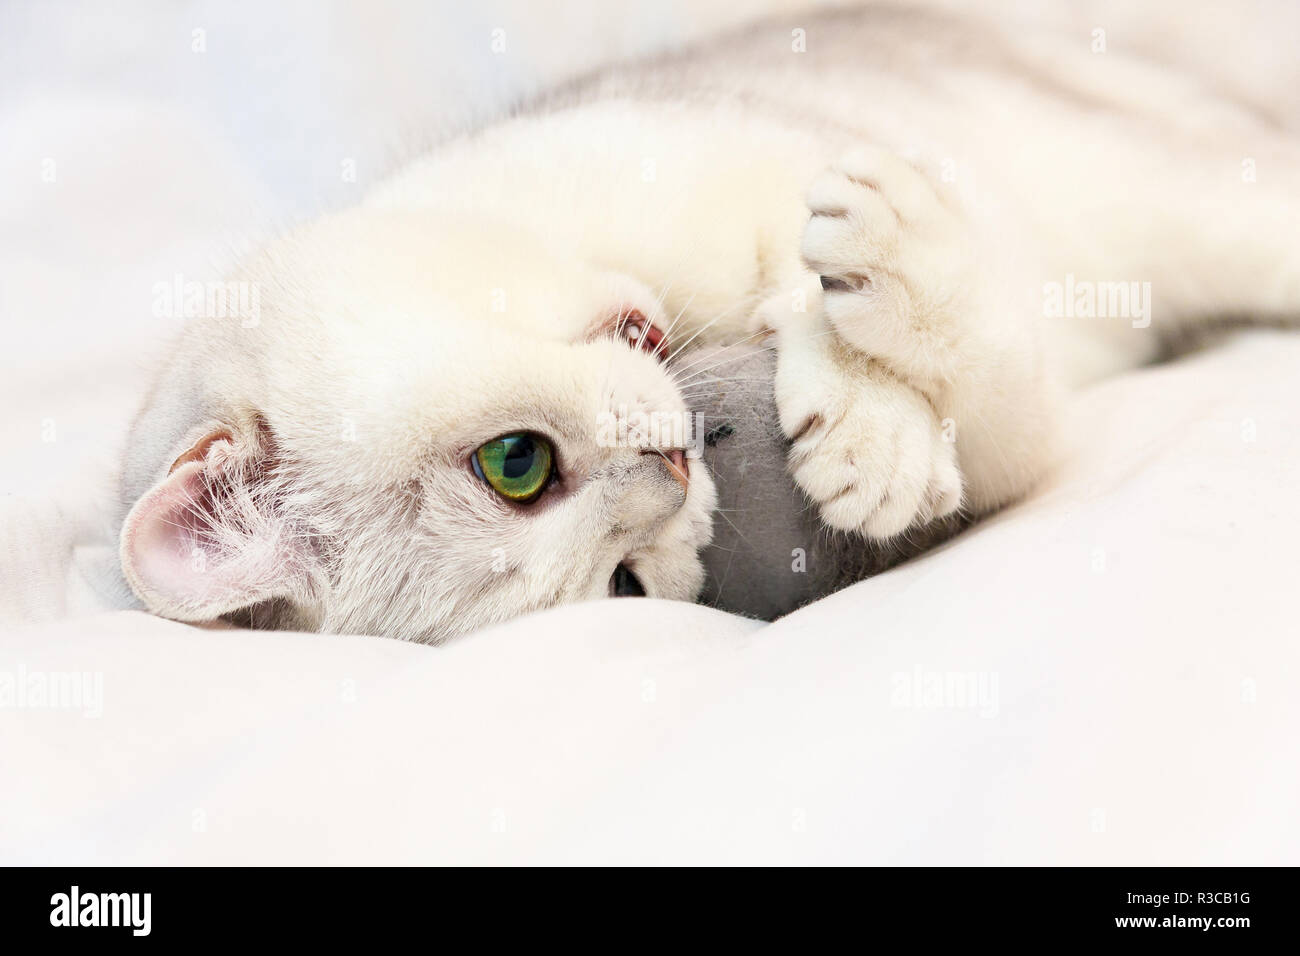 Un mignon petit chat blanc à jouer avec un jouet, un Britannique d'adorables chats espiègles yeux vert se trouve sur une couverture blanche serrant le jouet de pattes et de morsures de la souris Banque D'Images